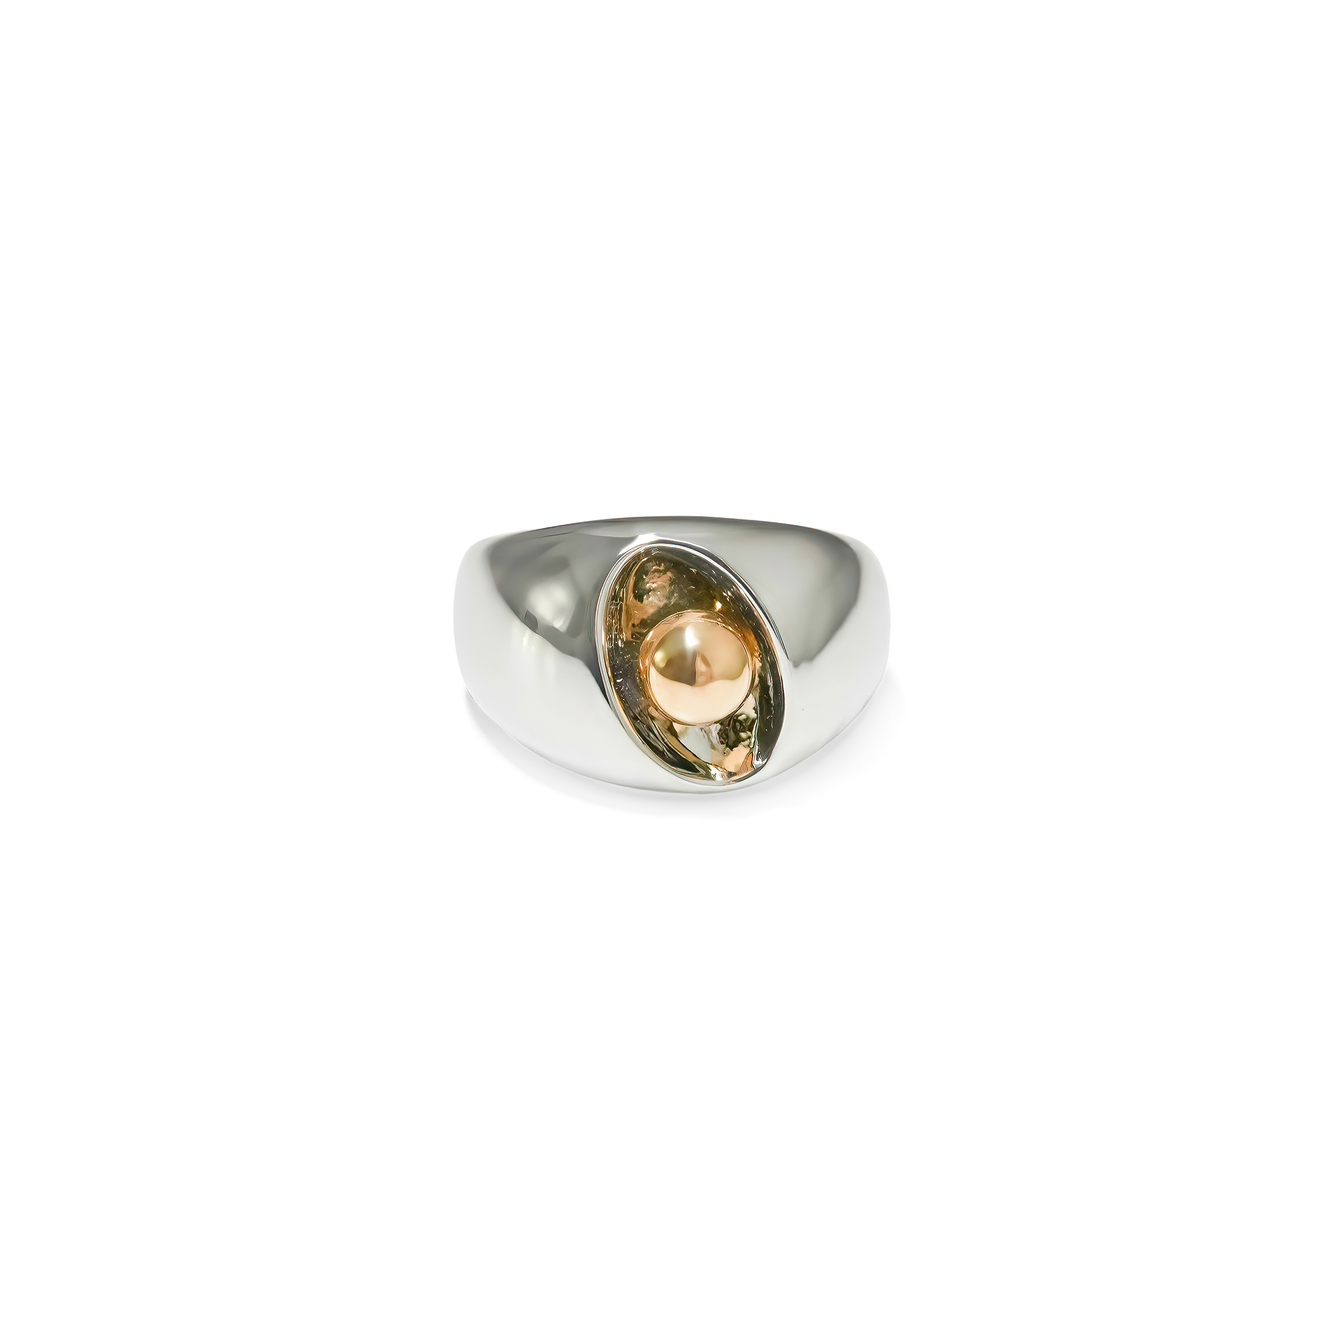 Free Form Jewelry Серебристое кольцо с золотистым шариком free form jewelry серебристое двойное кольцо с бантиком и кристаллами